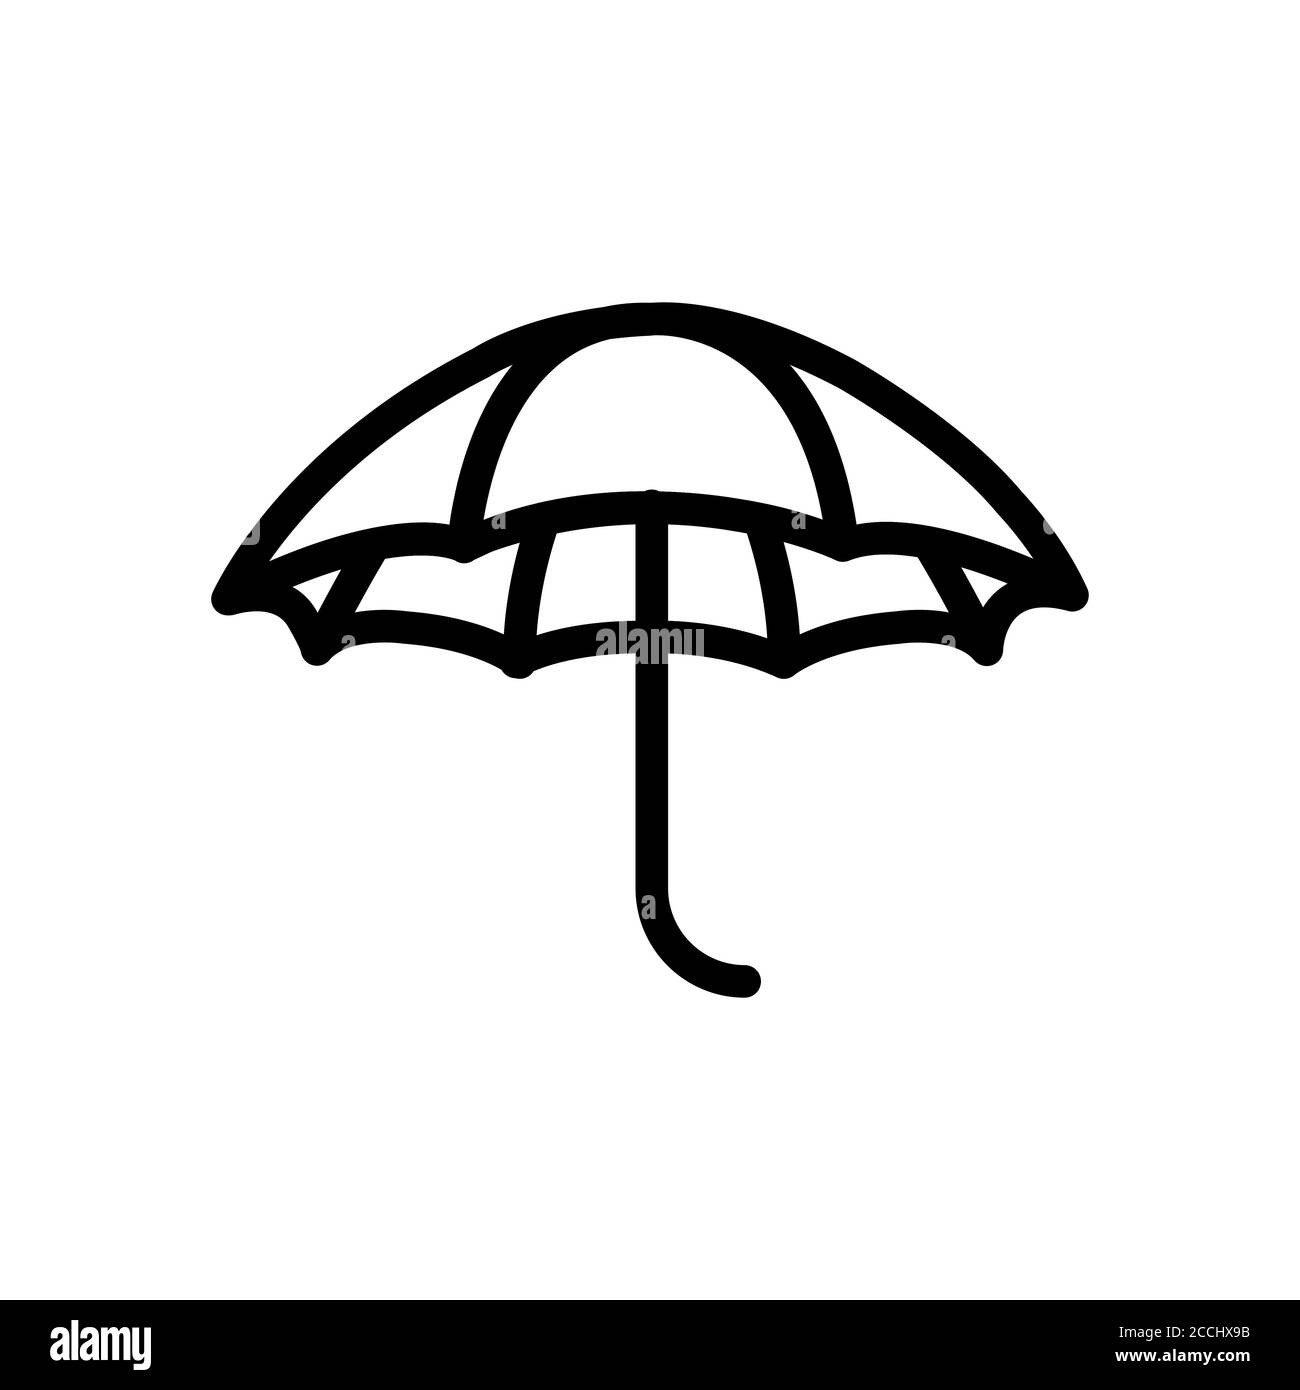 umbrella symbol Stock Vector